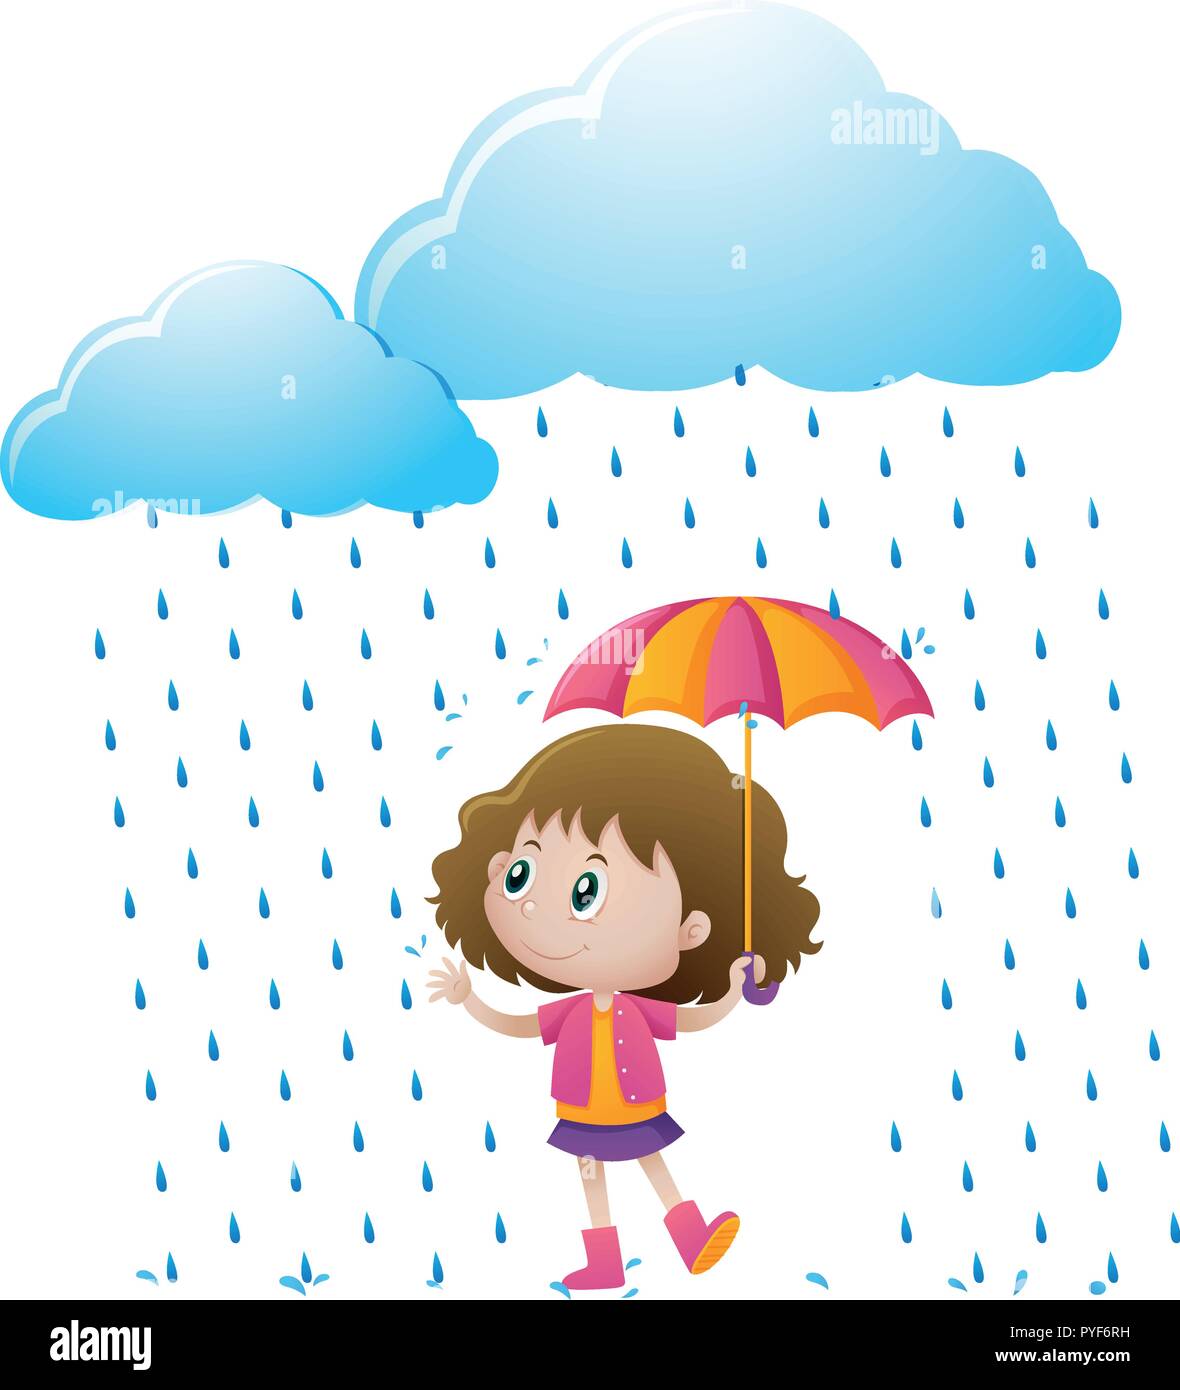 Little girl standing in the rain illustration Stock Vector